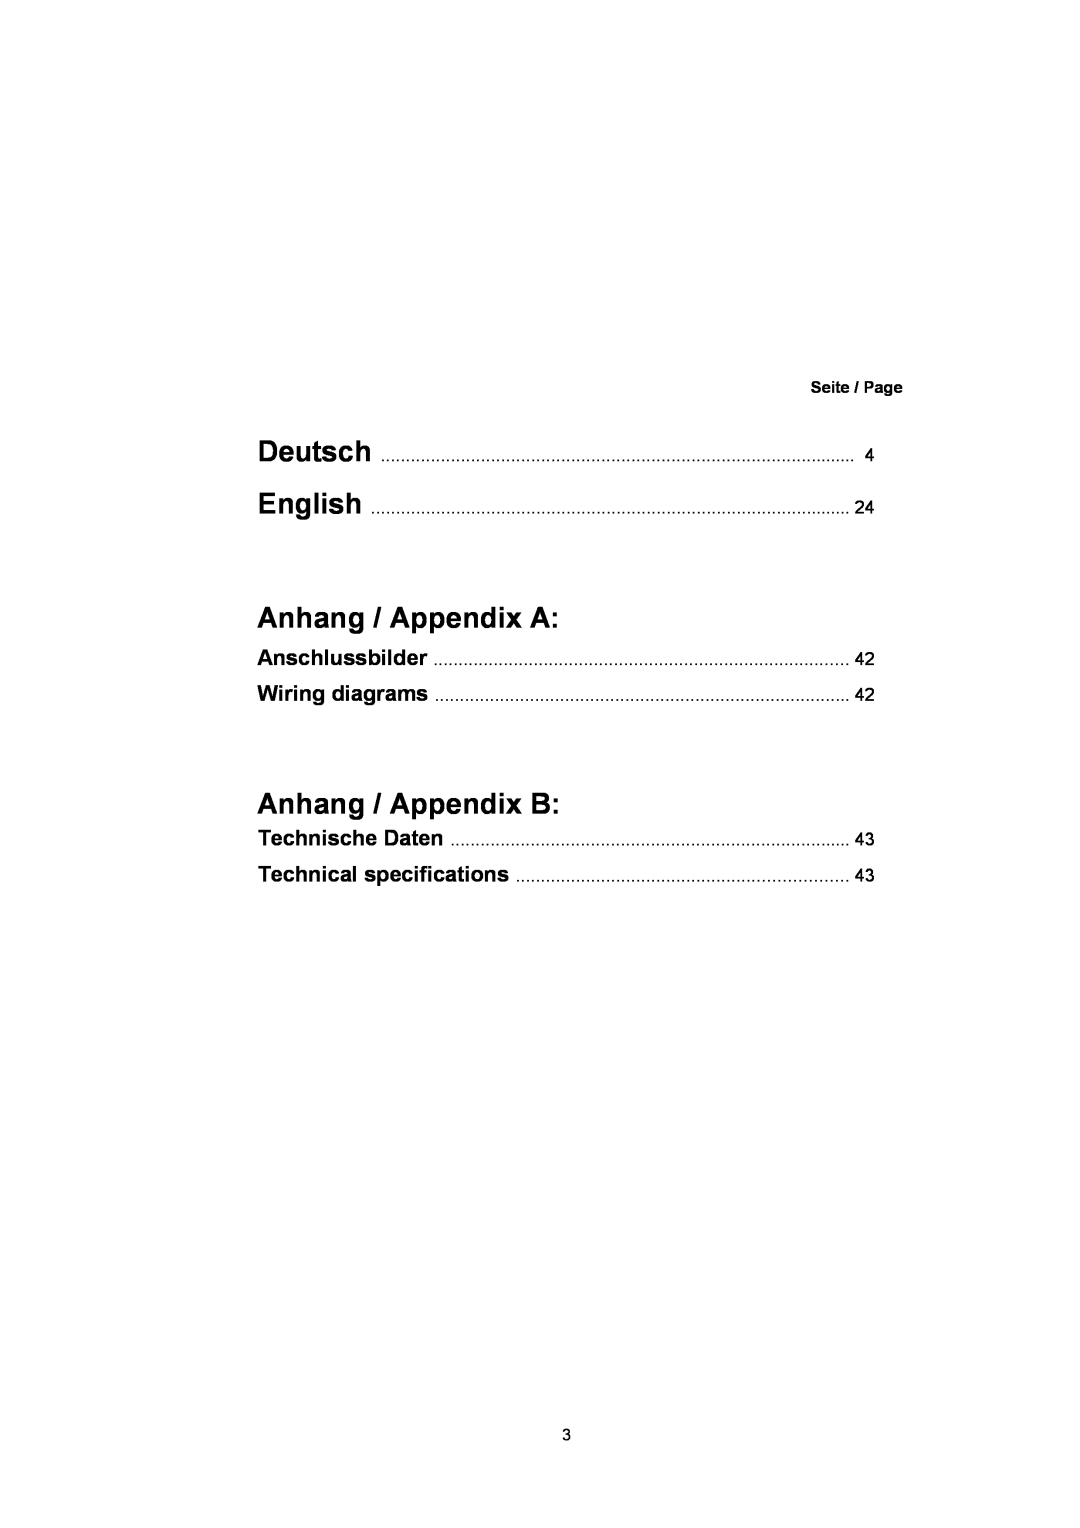 T+A Elektroakustik P 10 Deutsch, Anhang/AppendixA, Anhang/AppendixB, Anschlussbilder, Wiringdiagrams, TechnischeDaten 